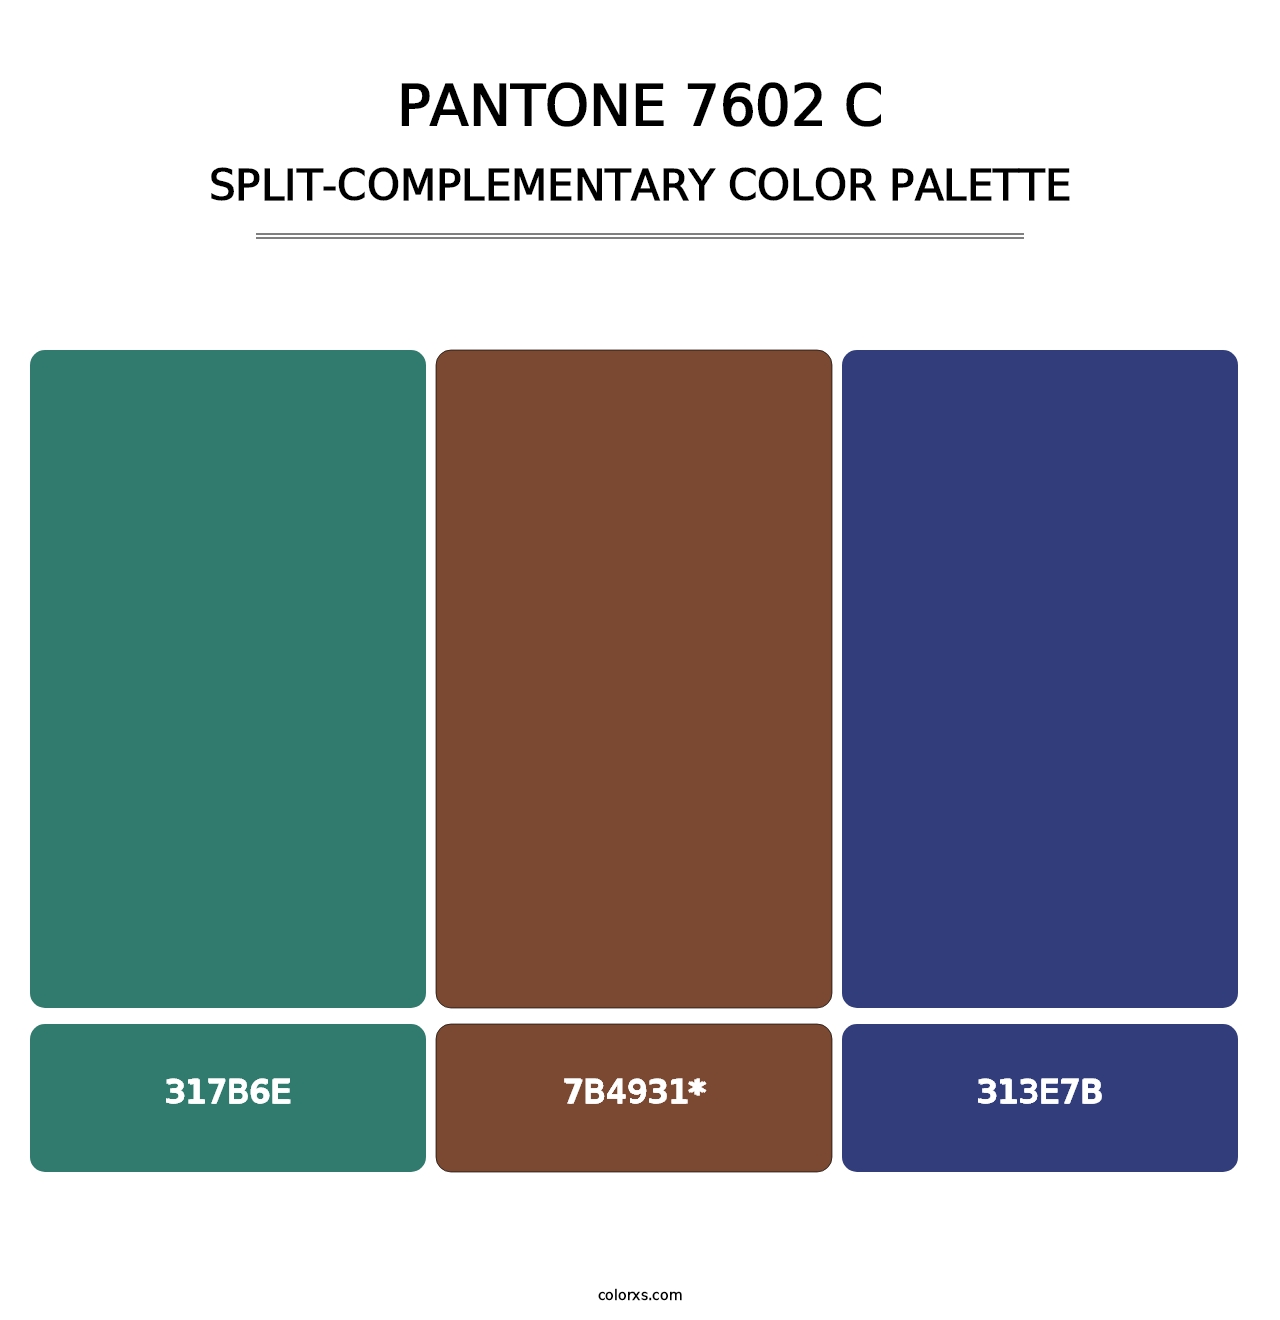 PANTONE 7602 C - Split-Complementary Color Palette